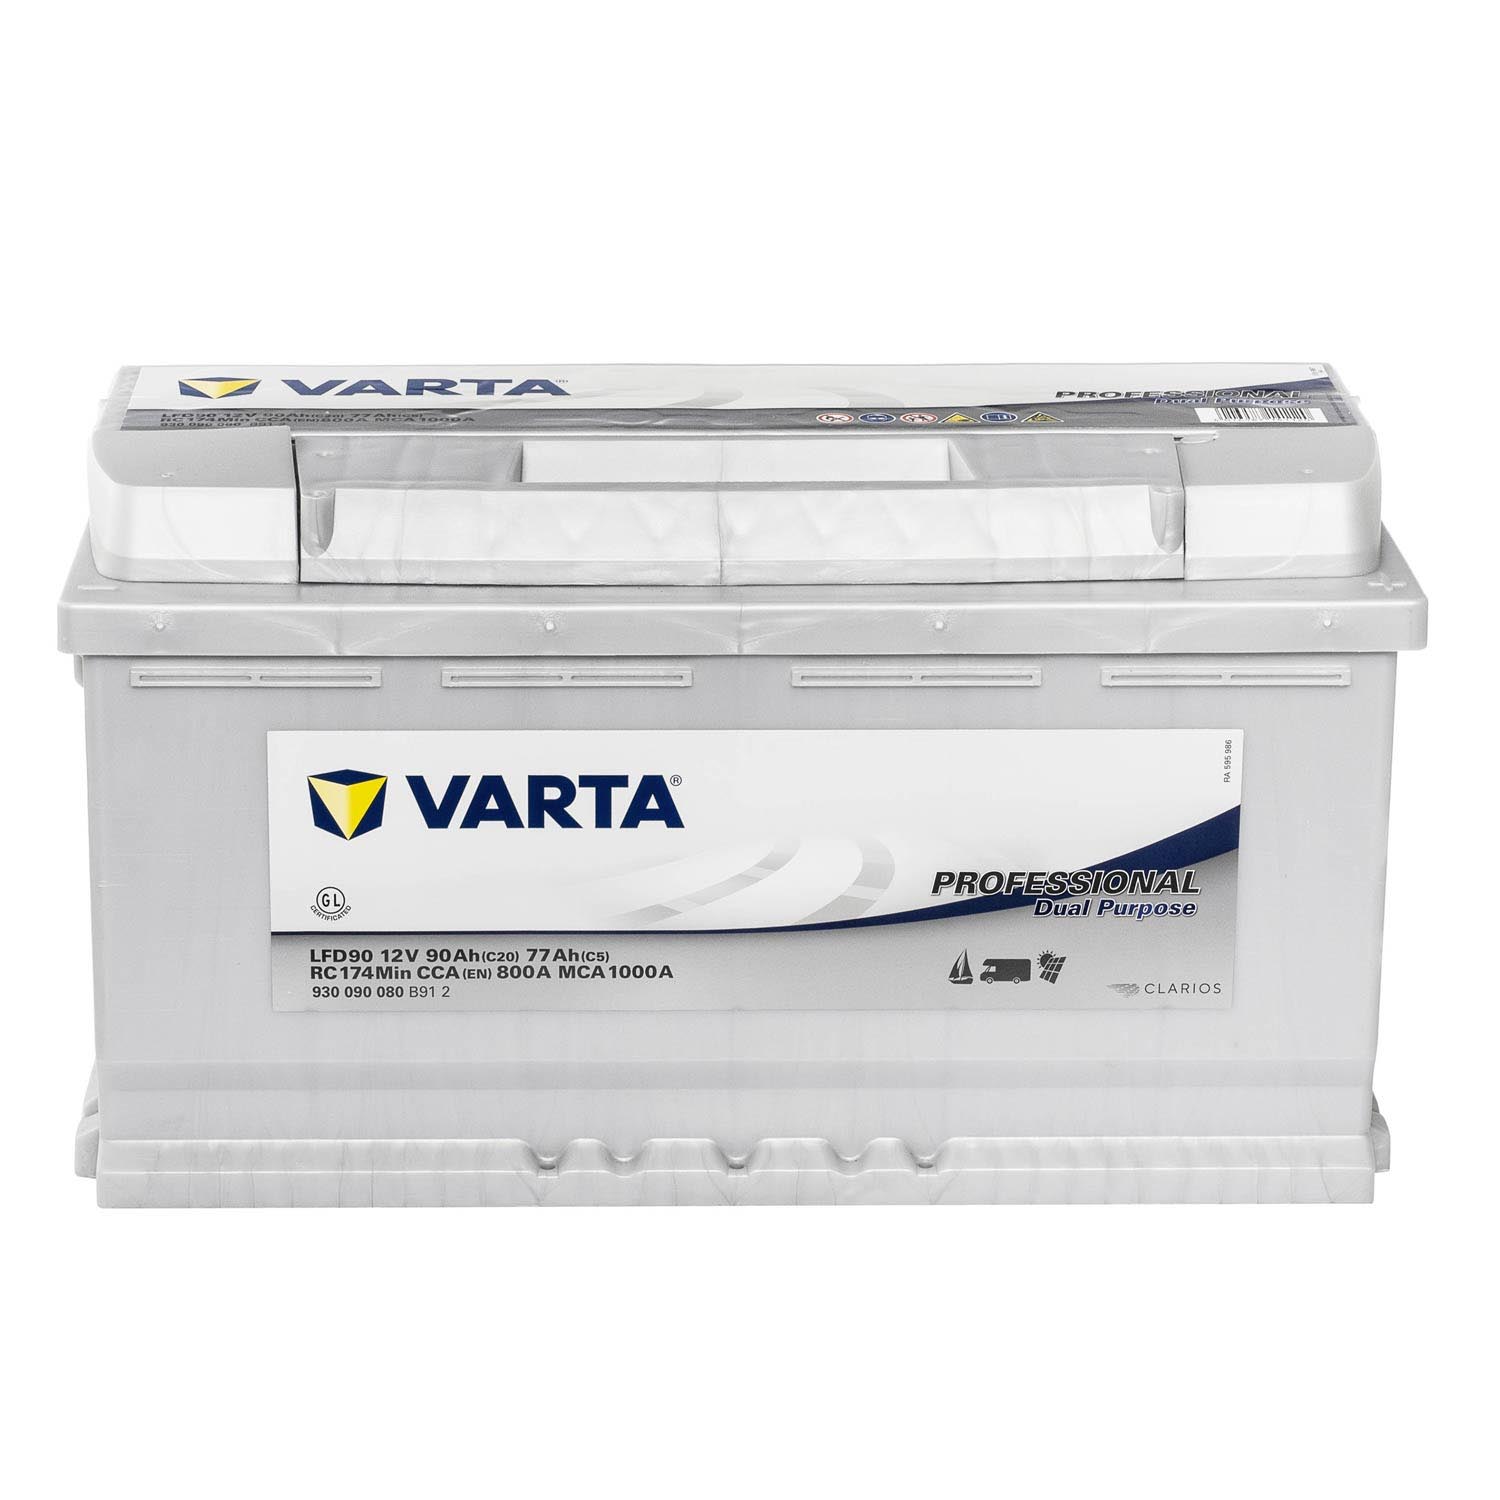 VARTA Professional DeepCycle Versorgungsbatterie LFD90 12V 90Ah